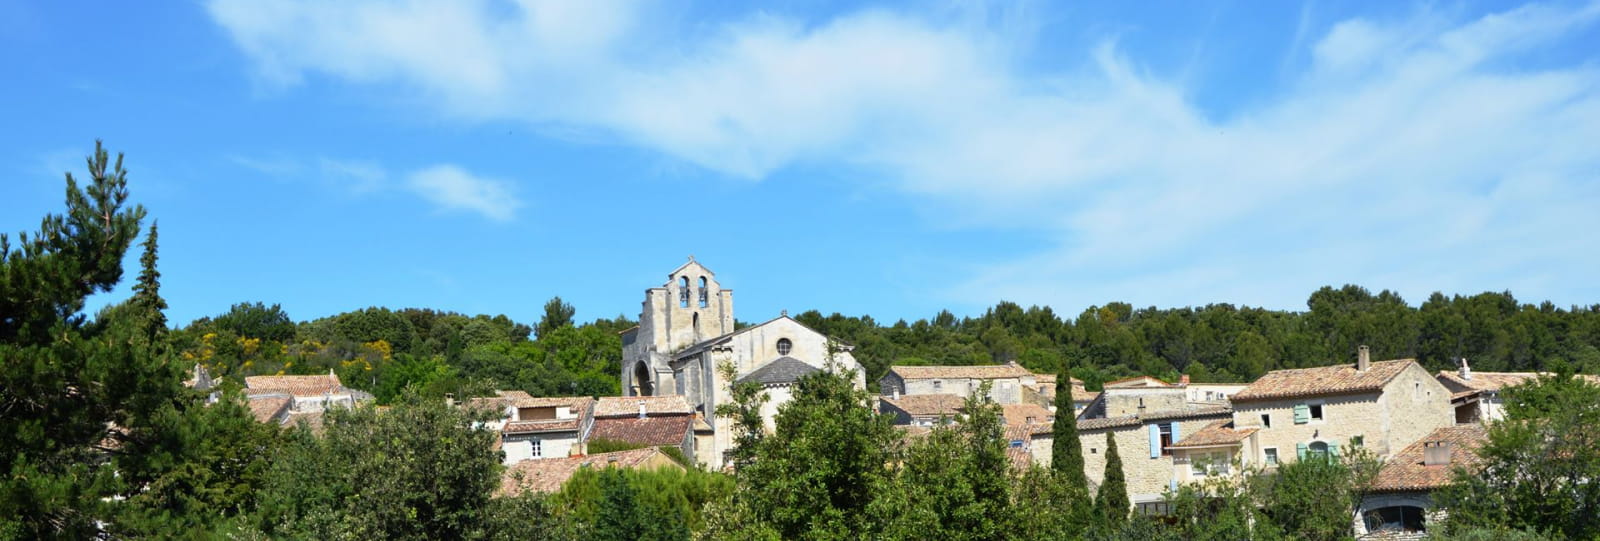 Eglise de style roman provençal